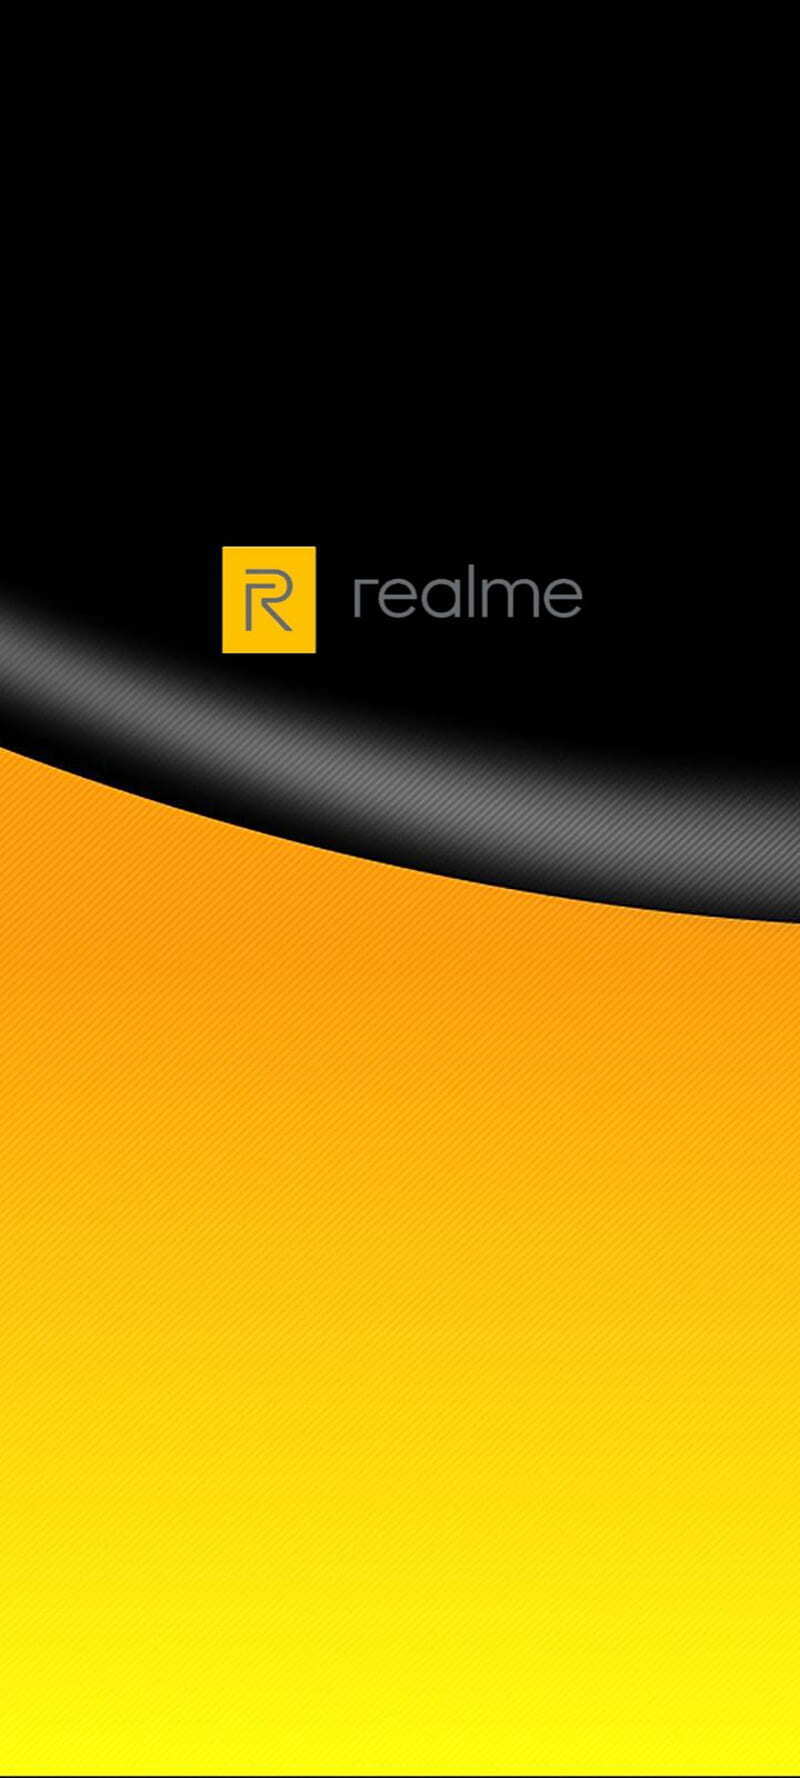 Hình nền đt Realme sẽ khiến cho màn hình của bạn trở nên nổi bật và thu hút sự chú ý từ tất cả những ai nhìn vào thiết bị của bạn. Hãy sáng tạo và tự do lựa chọn những hình ảnh phù hợp với phong cách và sở thích của mình để tối ưu hóa màn hình điện thoại.